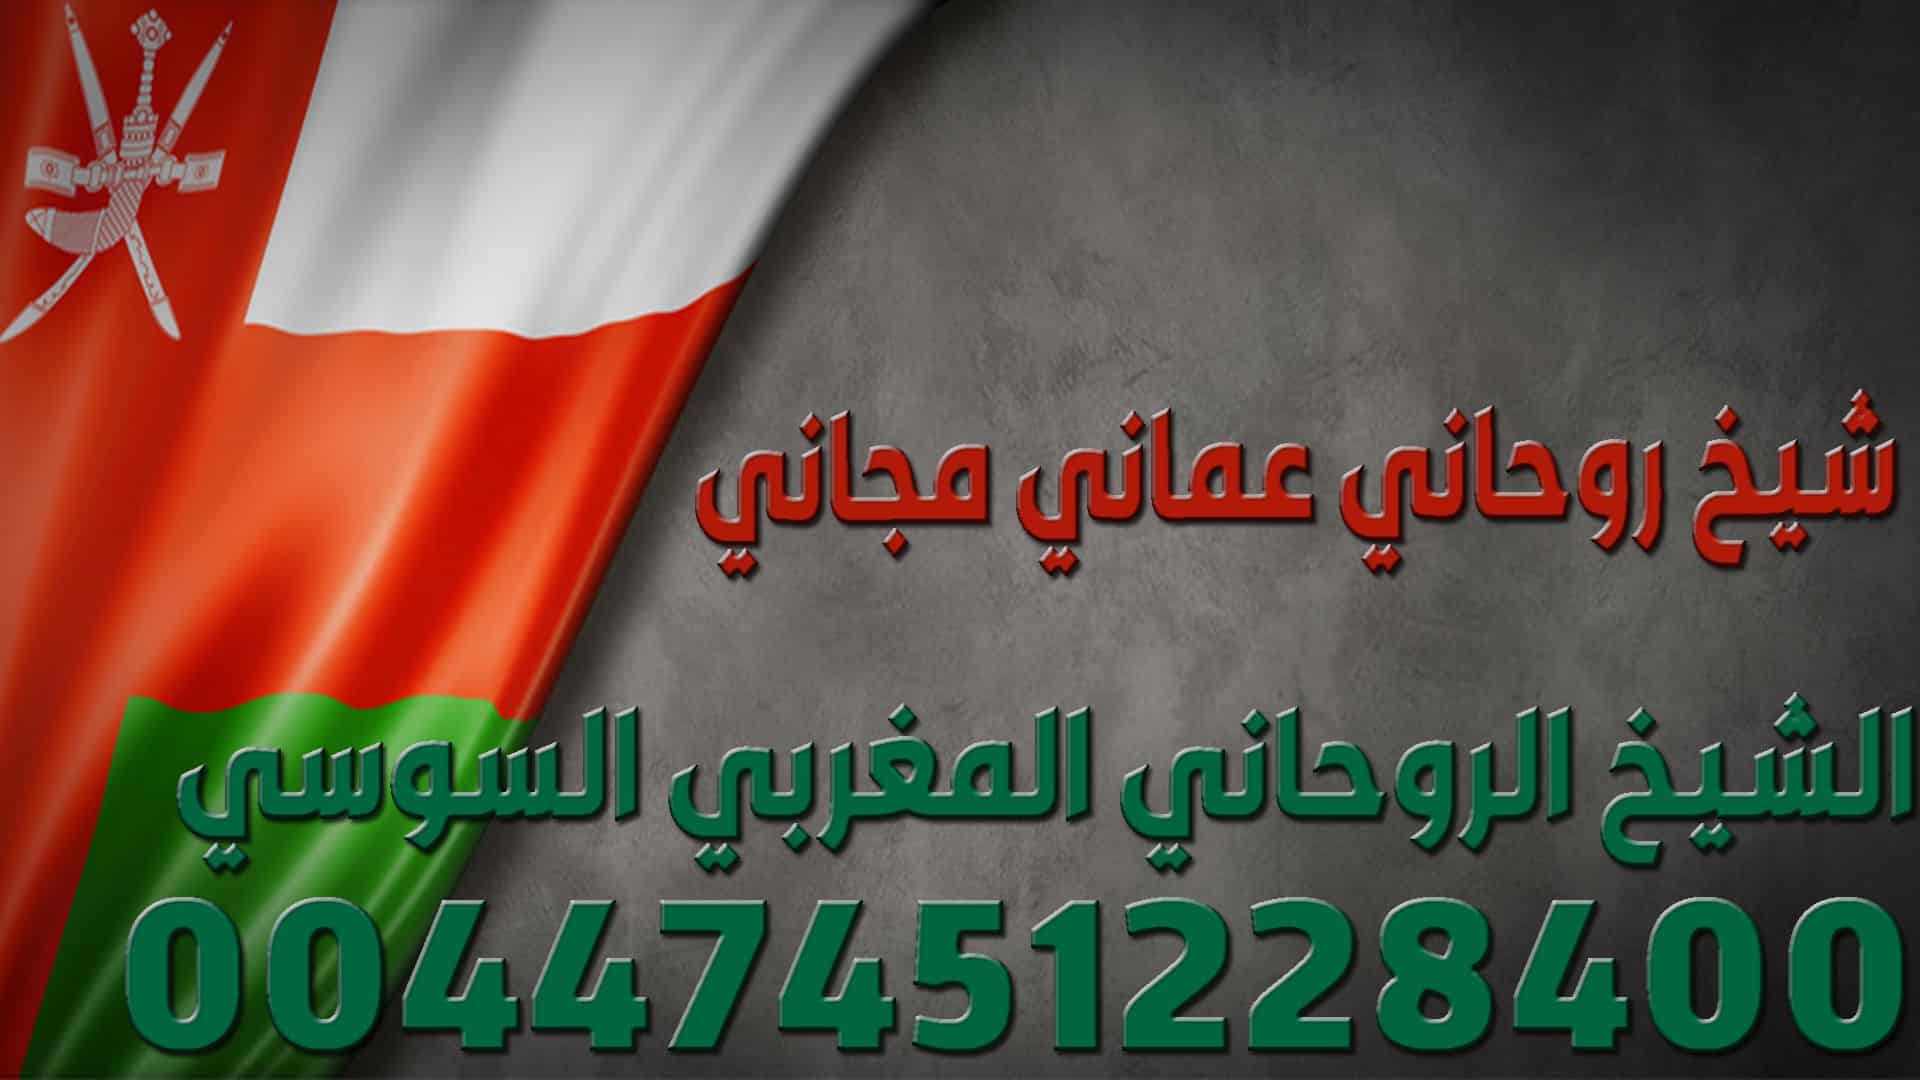 شيخ روحاني عماني مجاني